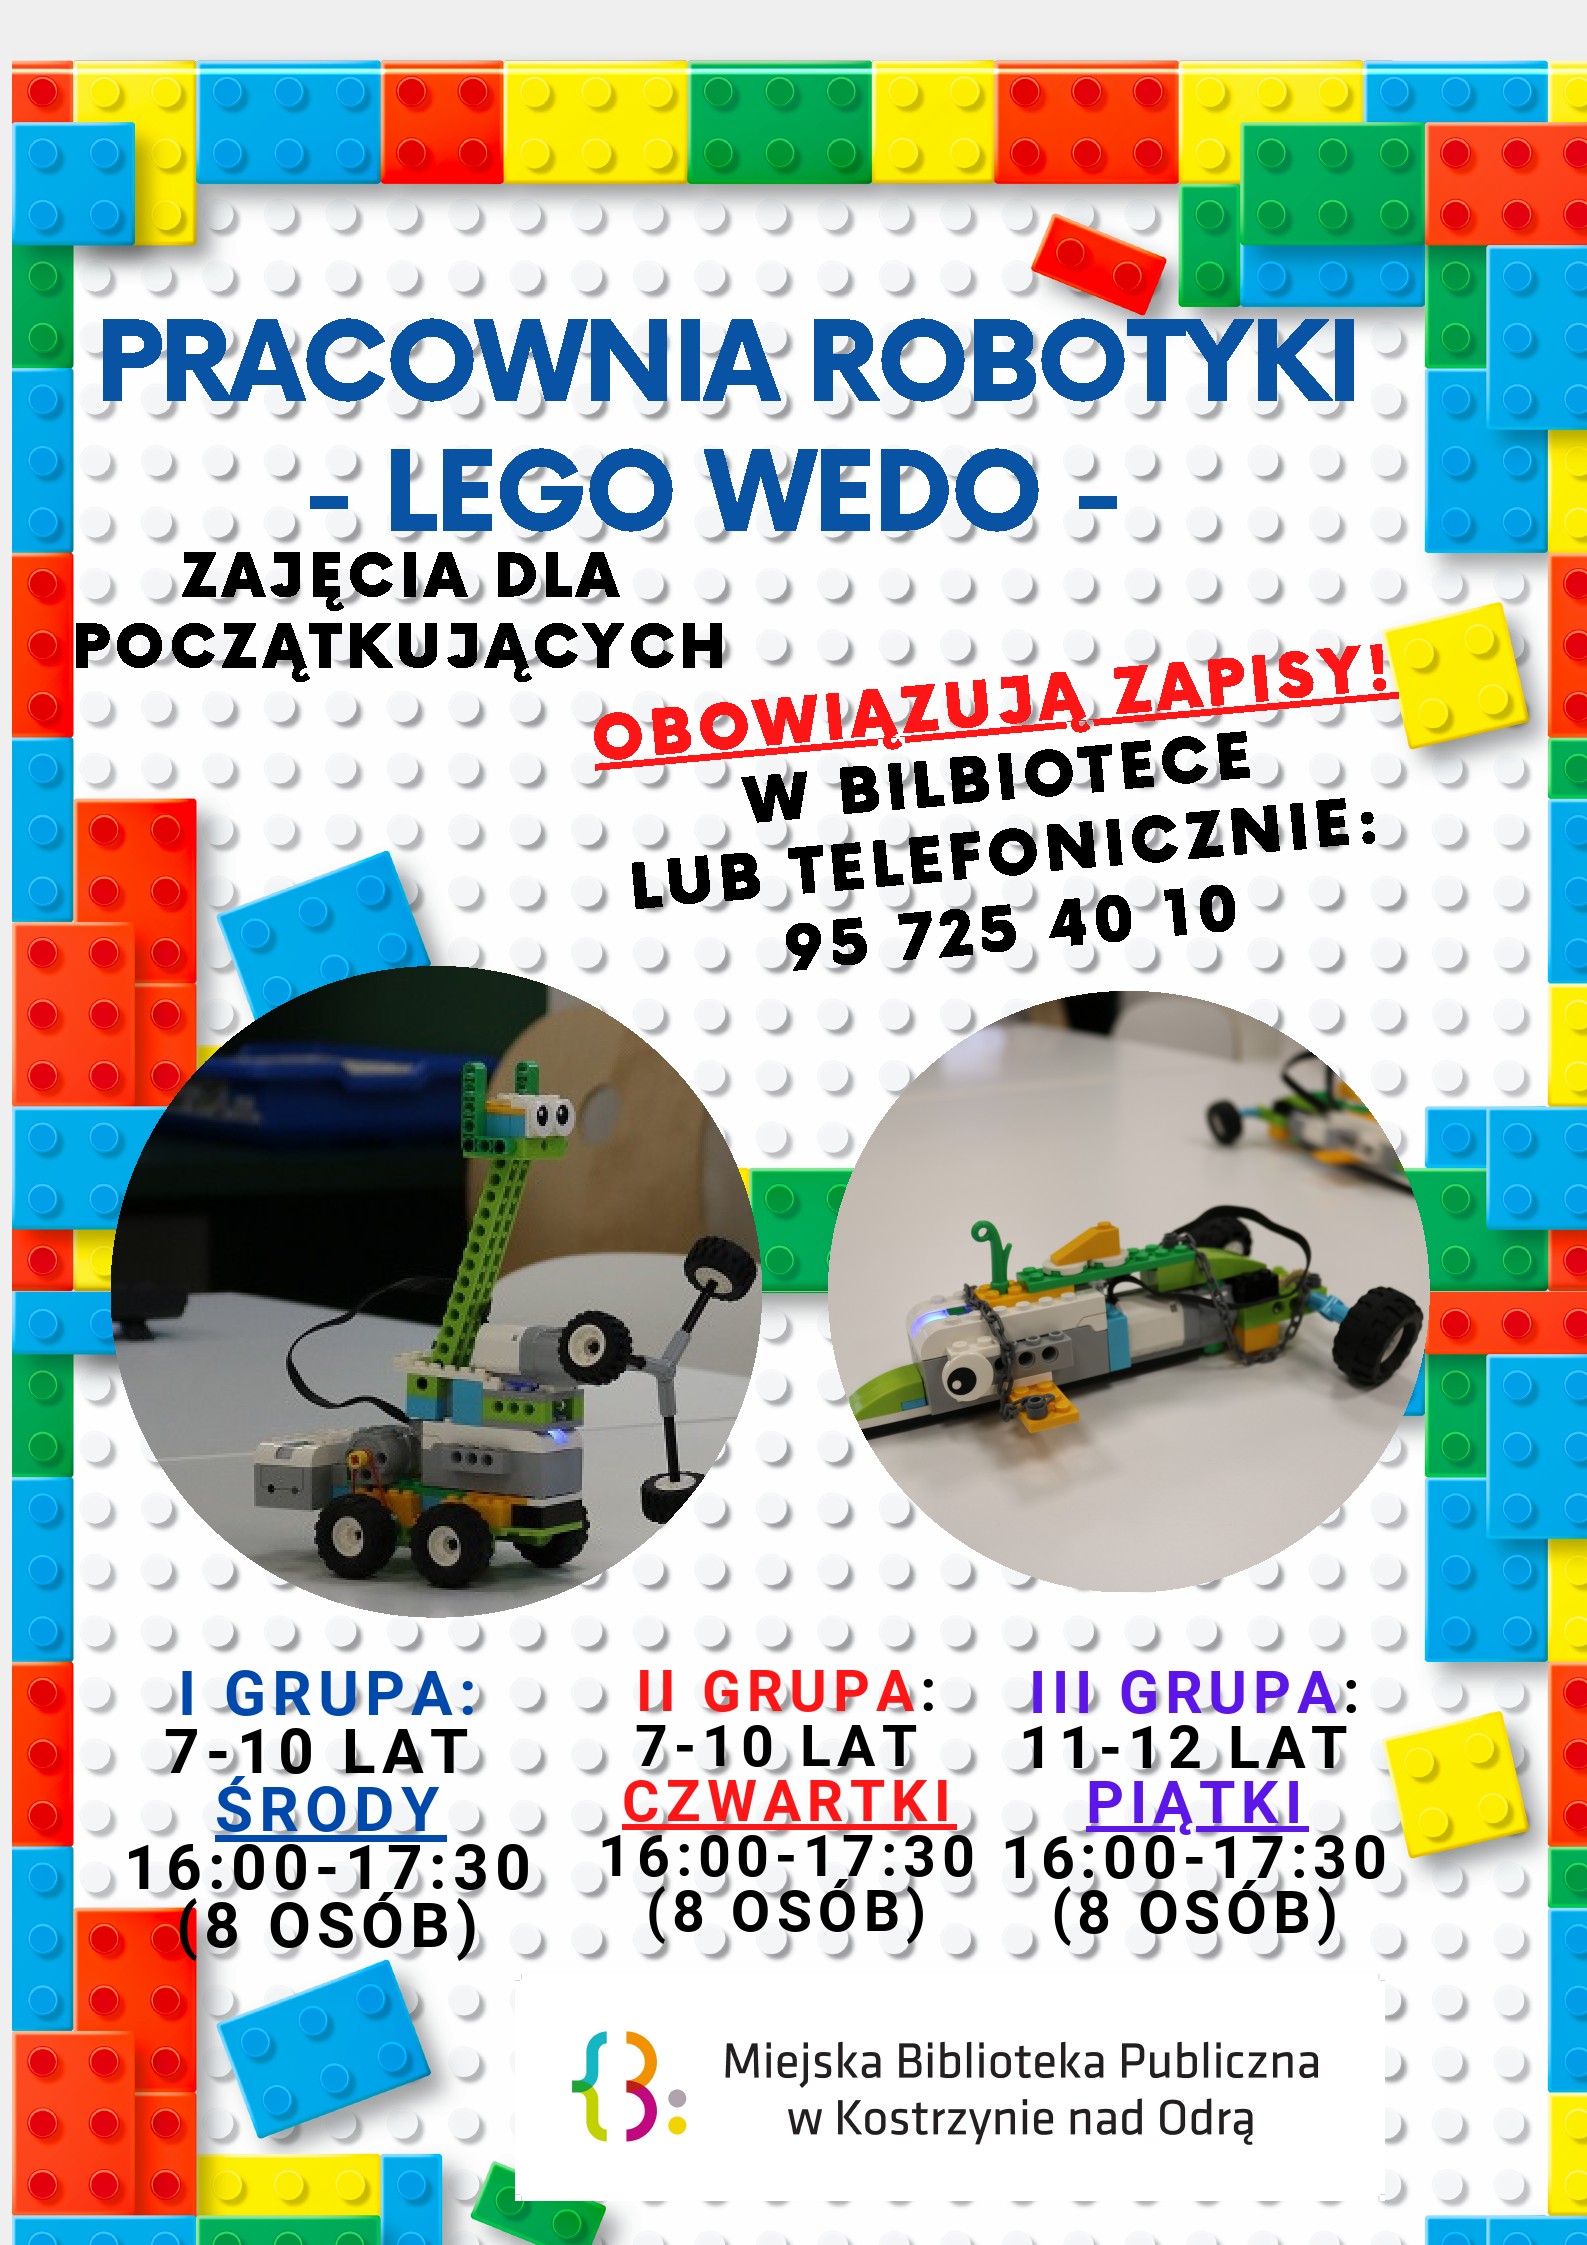 Pracownia roboyki - LEGO WEDO - informacje podstawowe